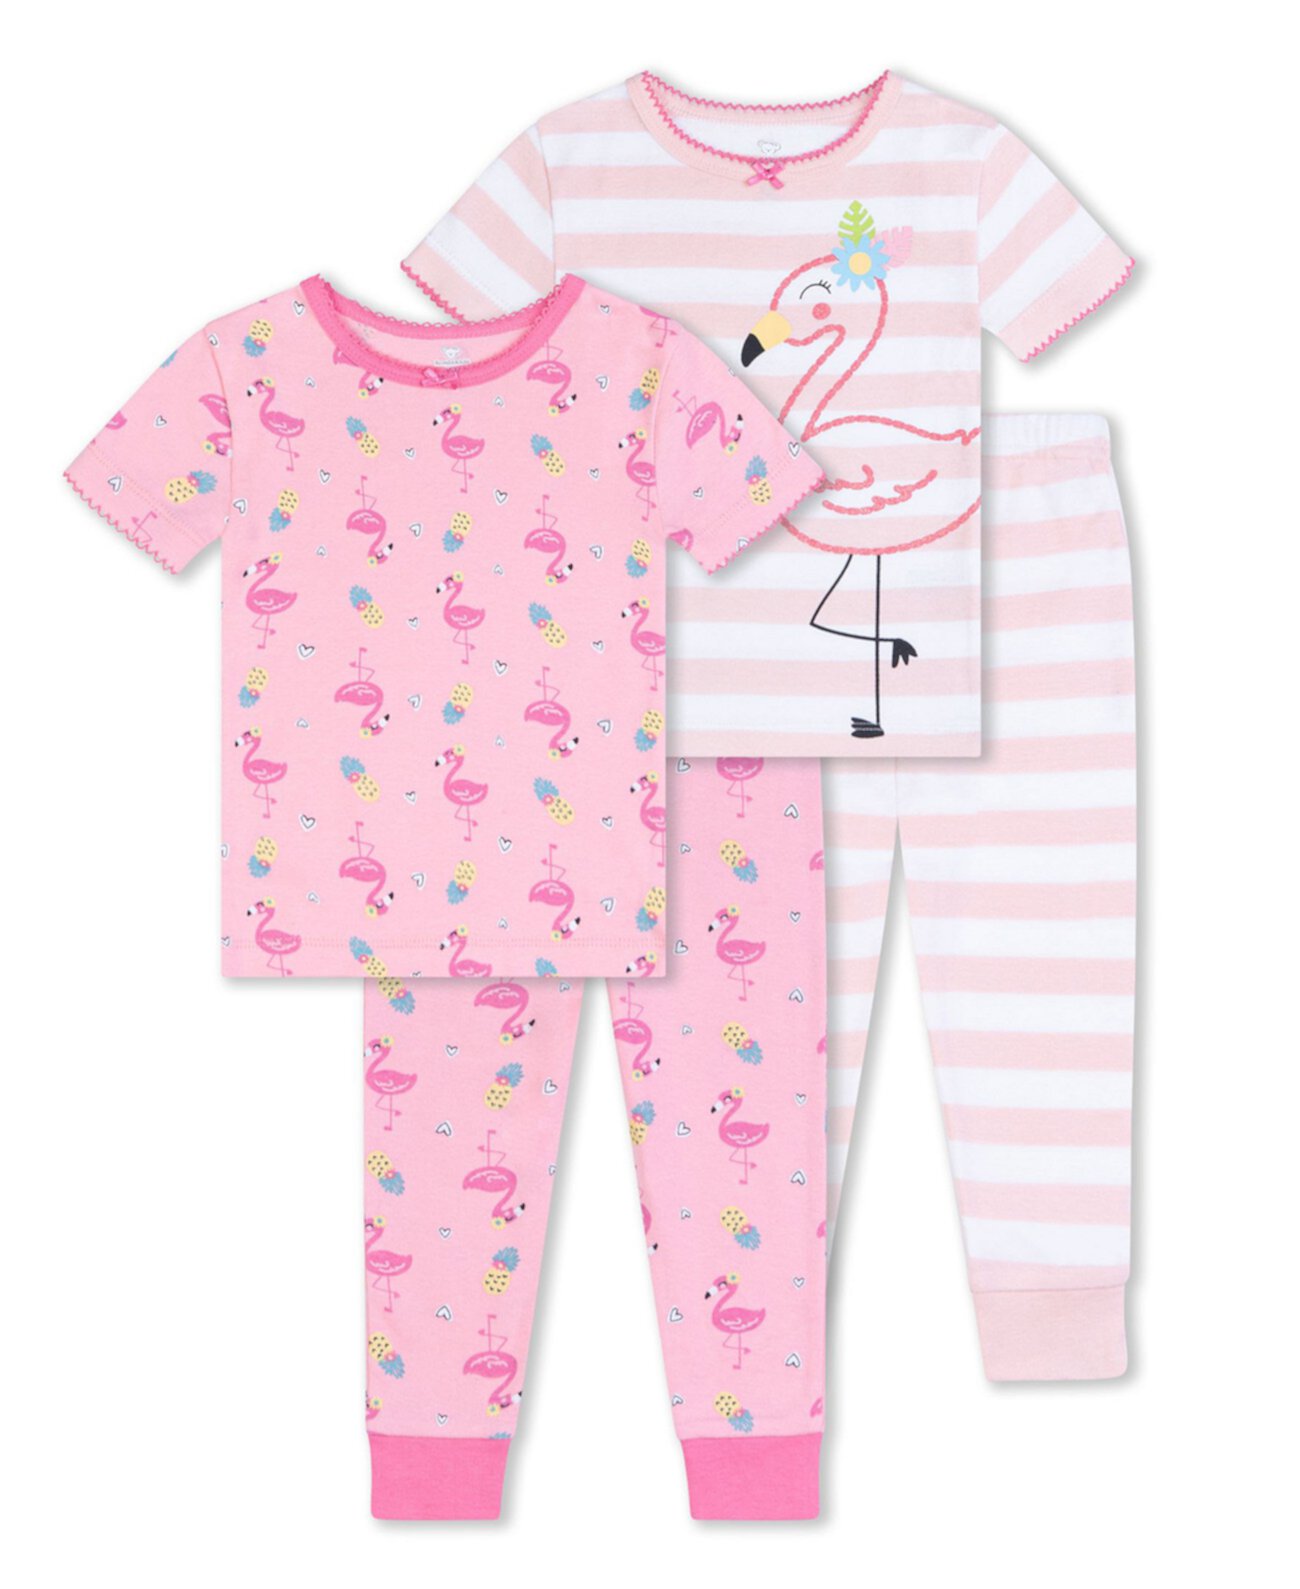 Одежда для сна с фламинго для маленьких девочек, комплект из 4 предметов Koala baby